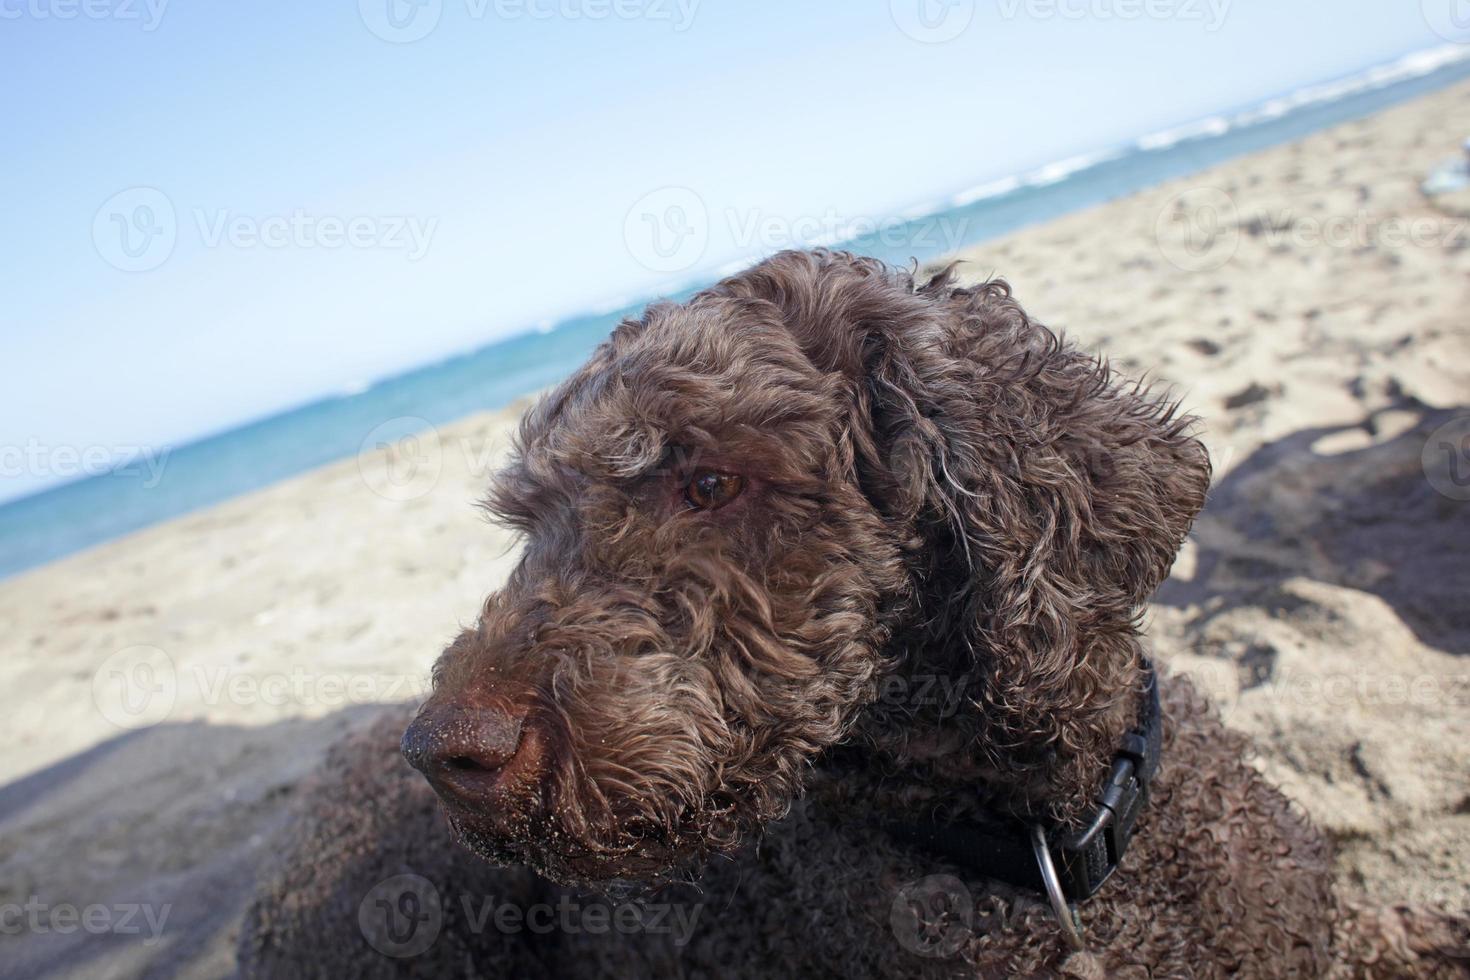 perro encantador lagotto romagnolo isla de creta verano 2020 covid-19 veces foto